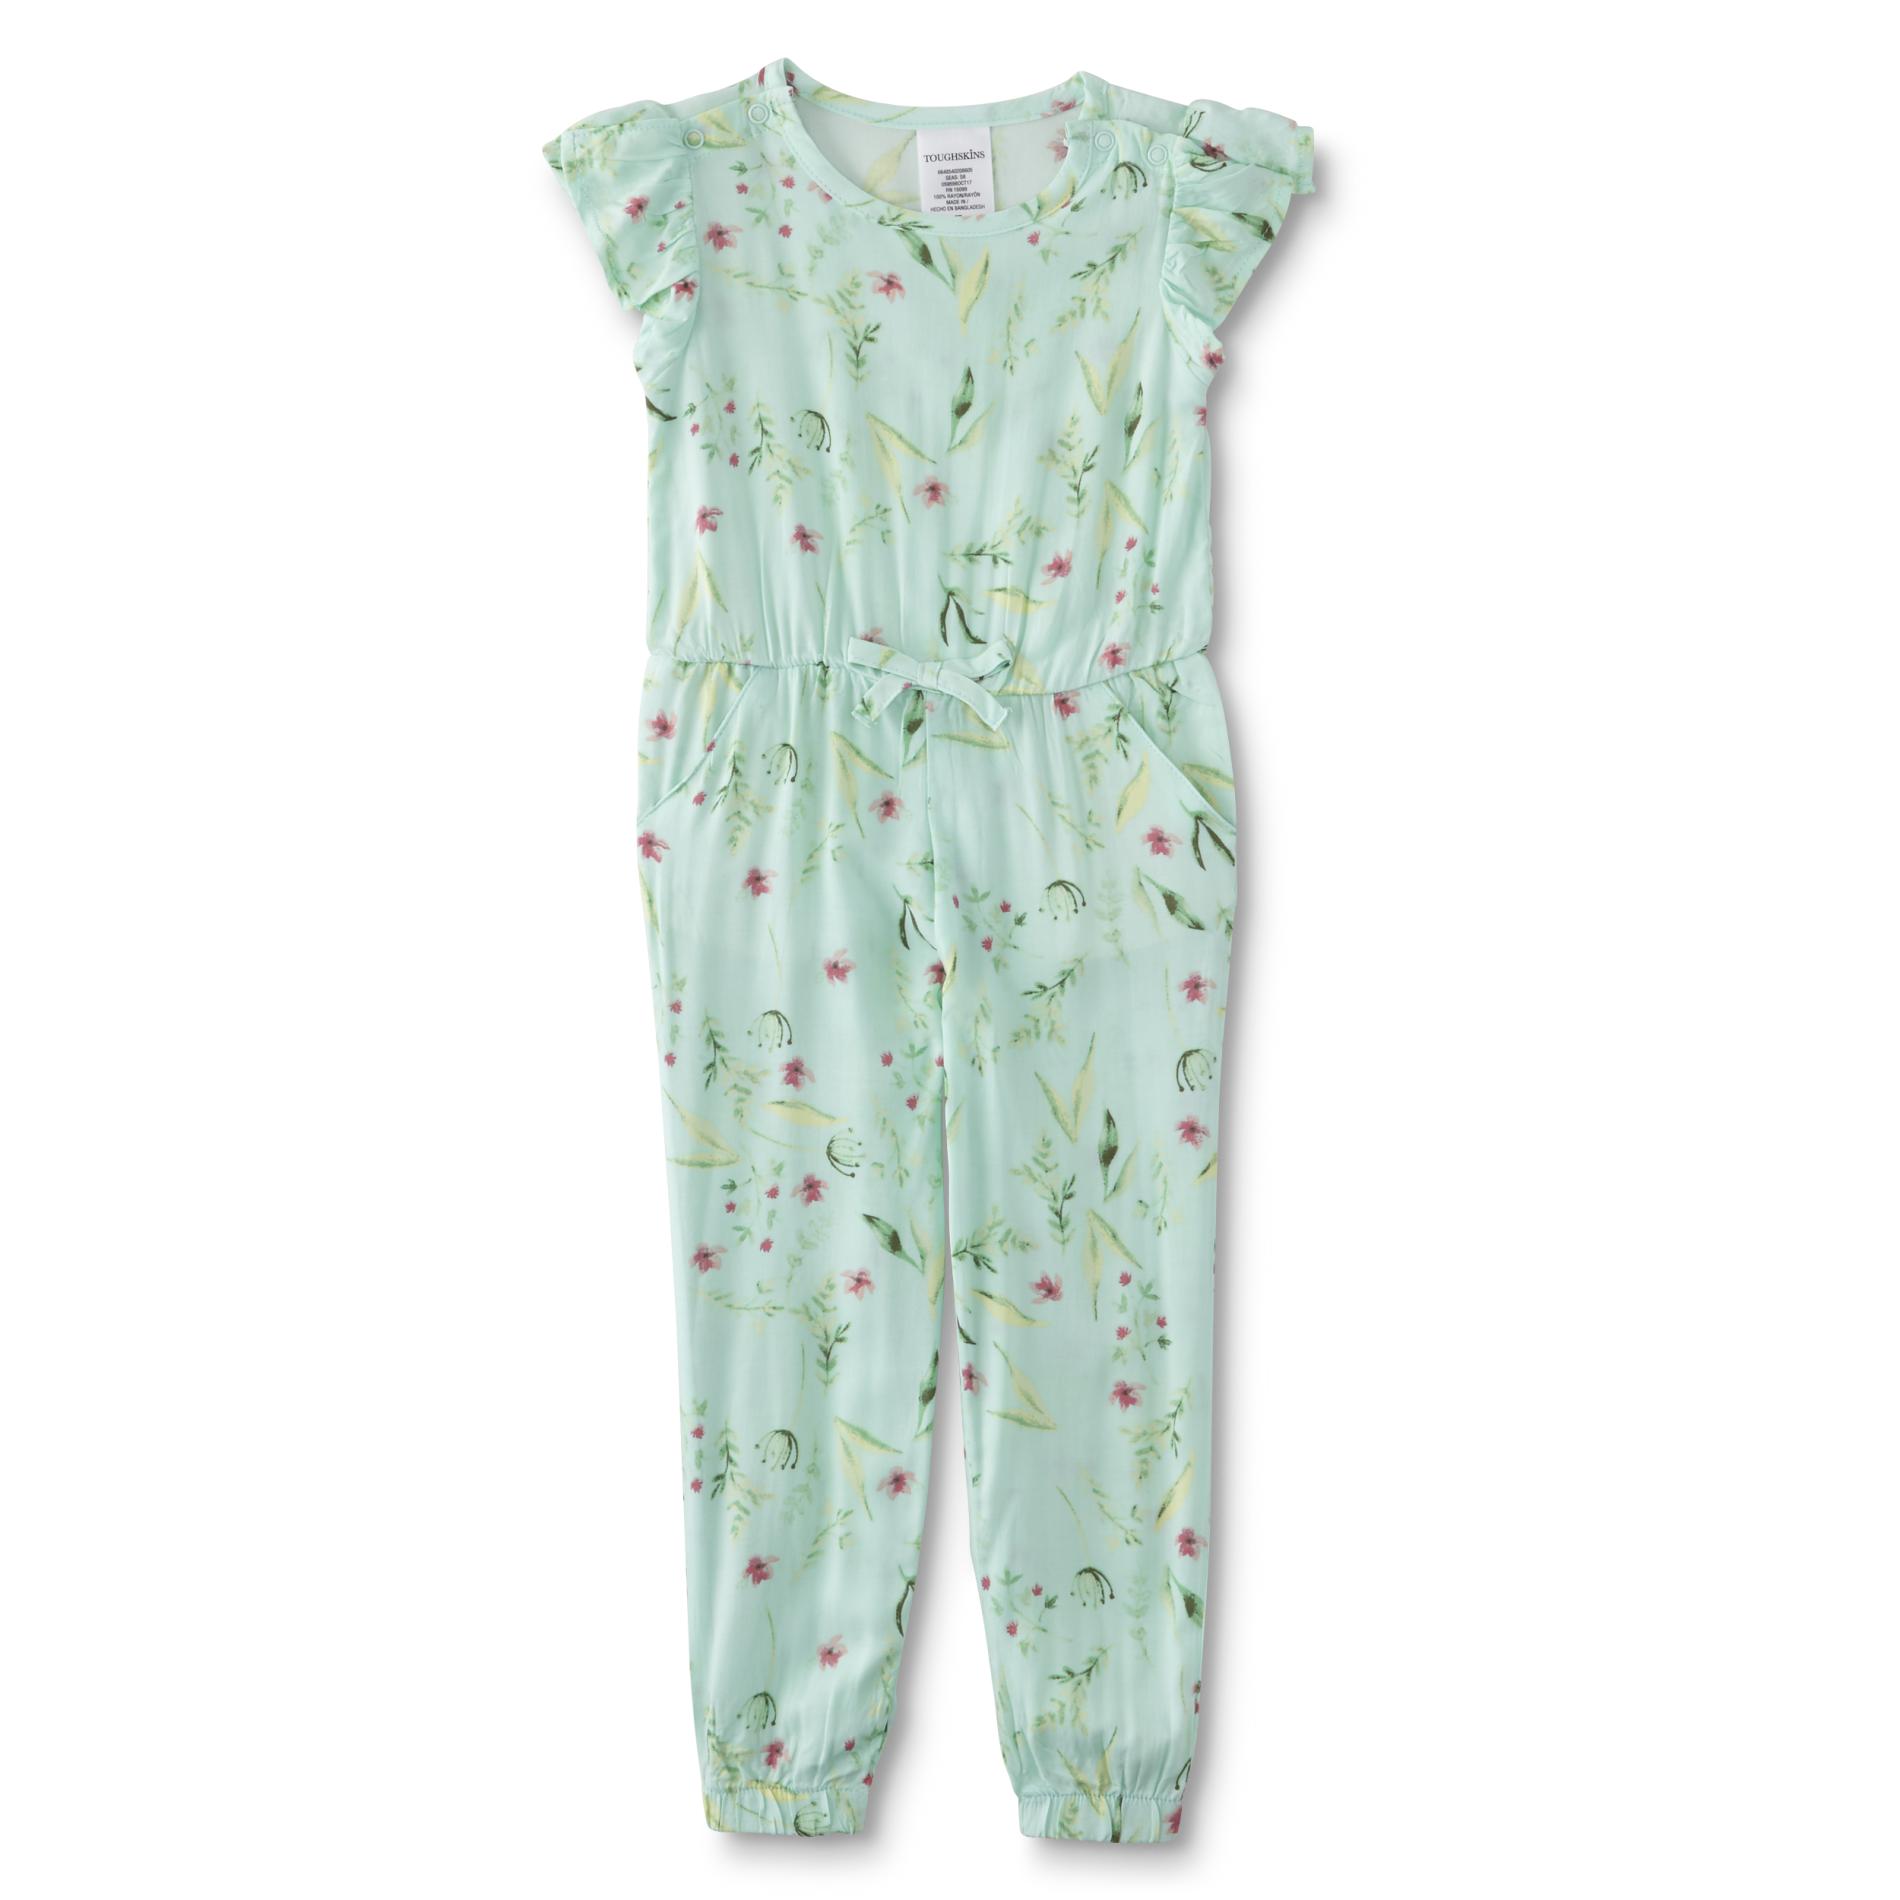 Toughskins Toddler & Infant Girls' Jumpsuit - Floral